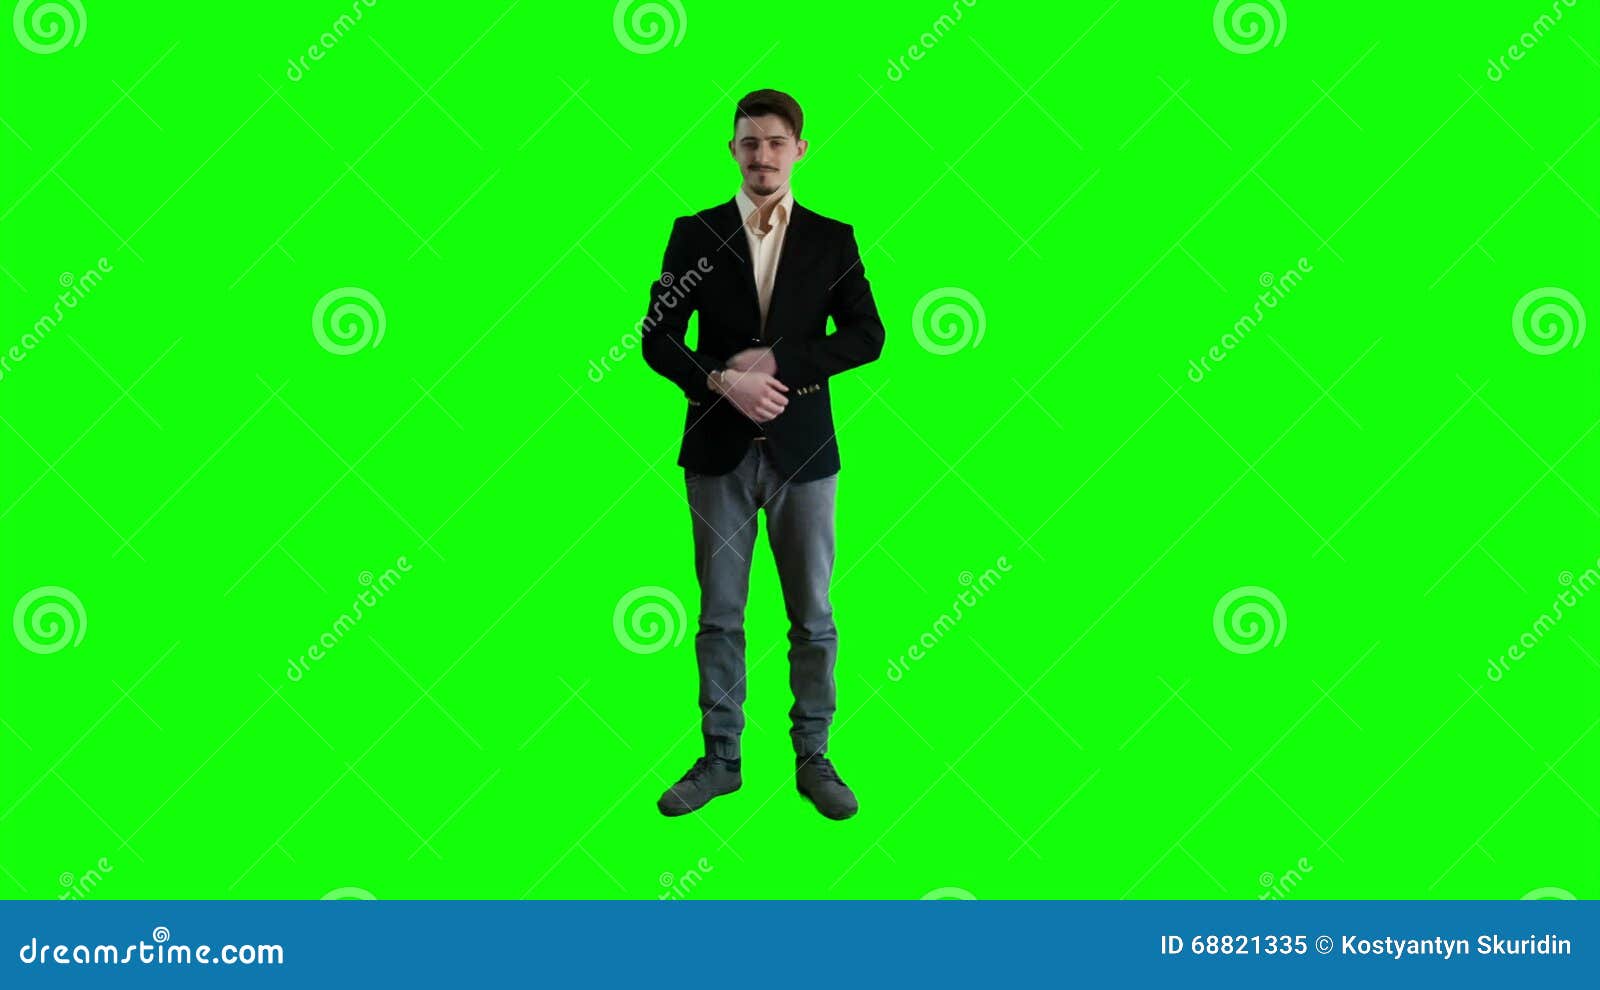 Sưu tập 700 Green background man Chất lượng HD đẹp nhất